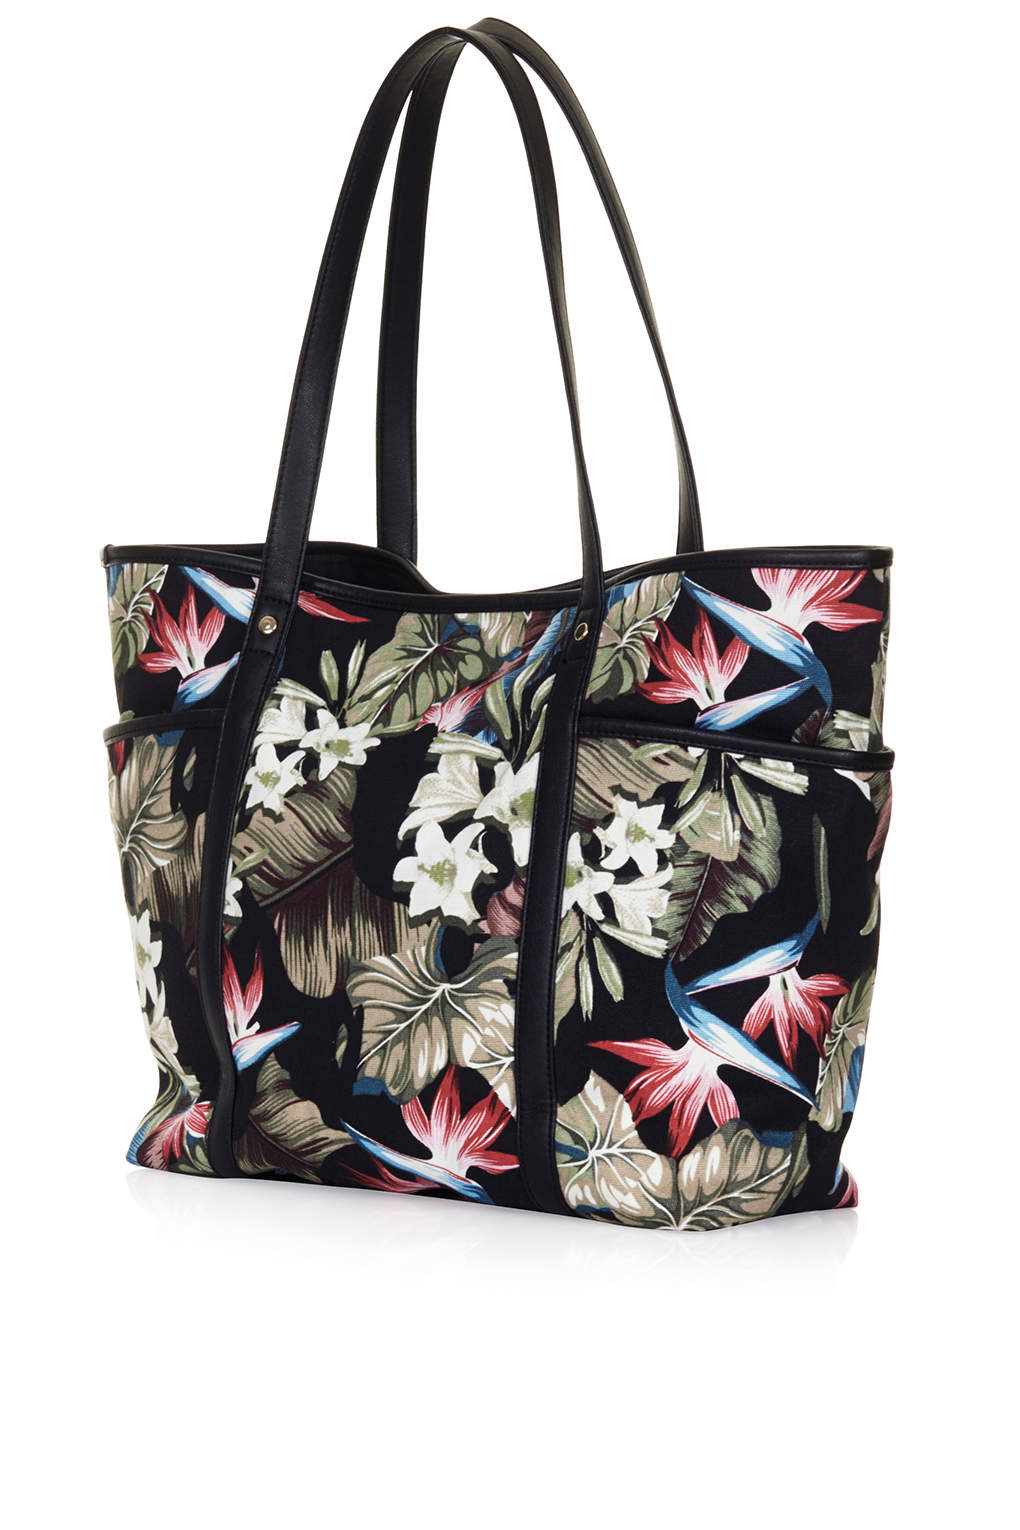 Lyst - Topshop Floral Printed Tote Bag in Black